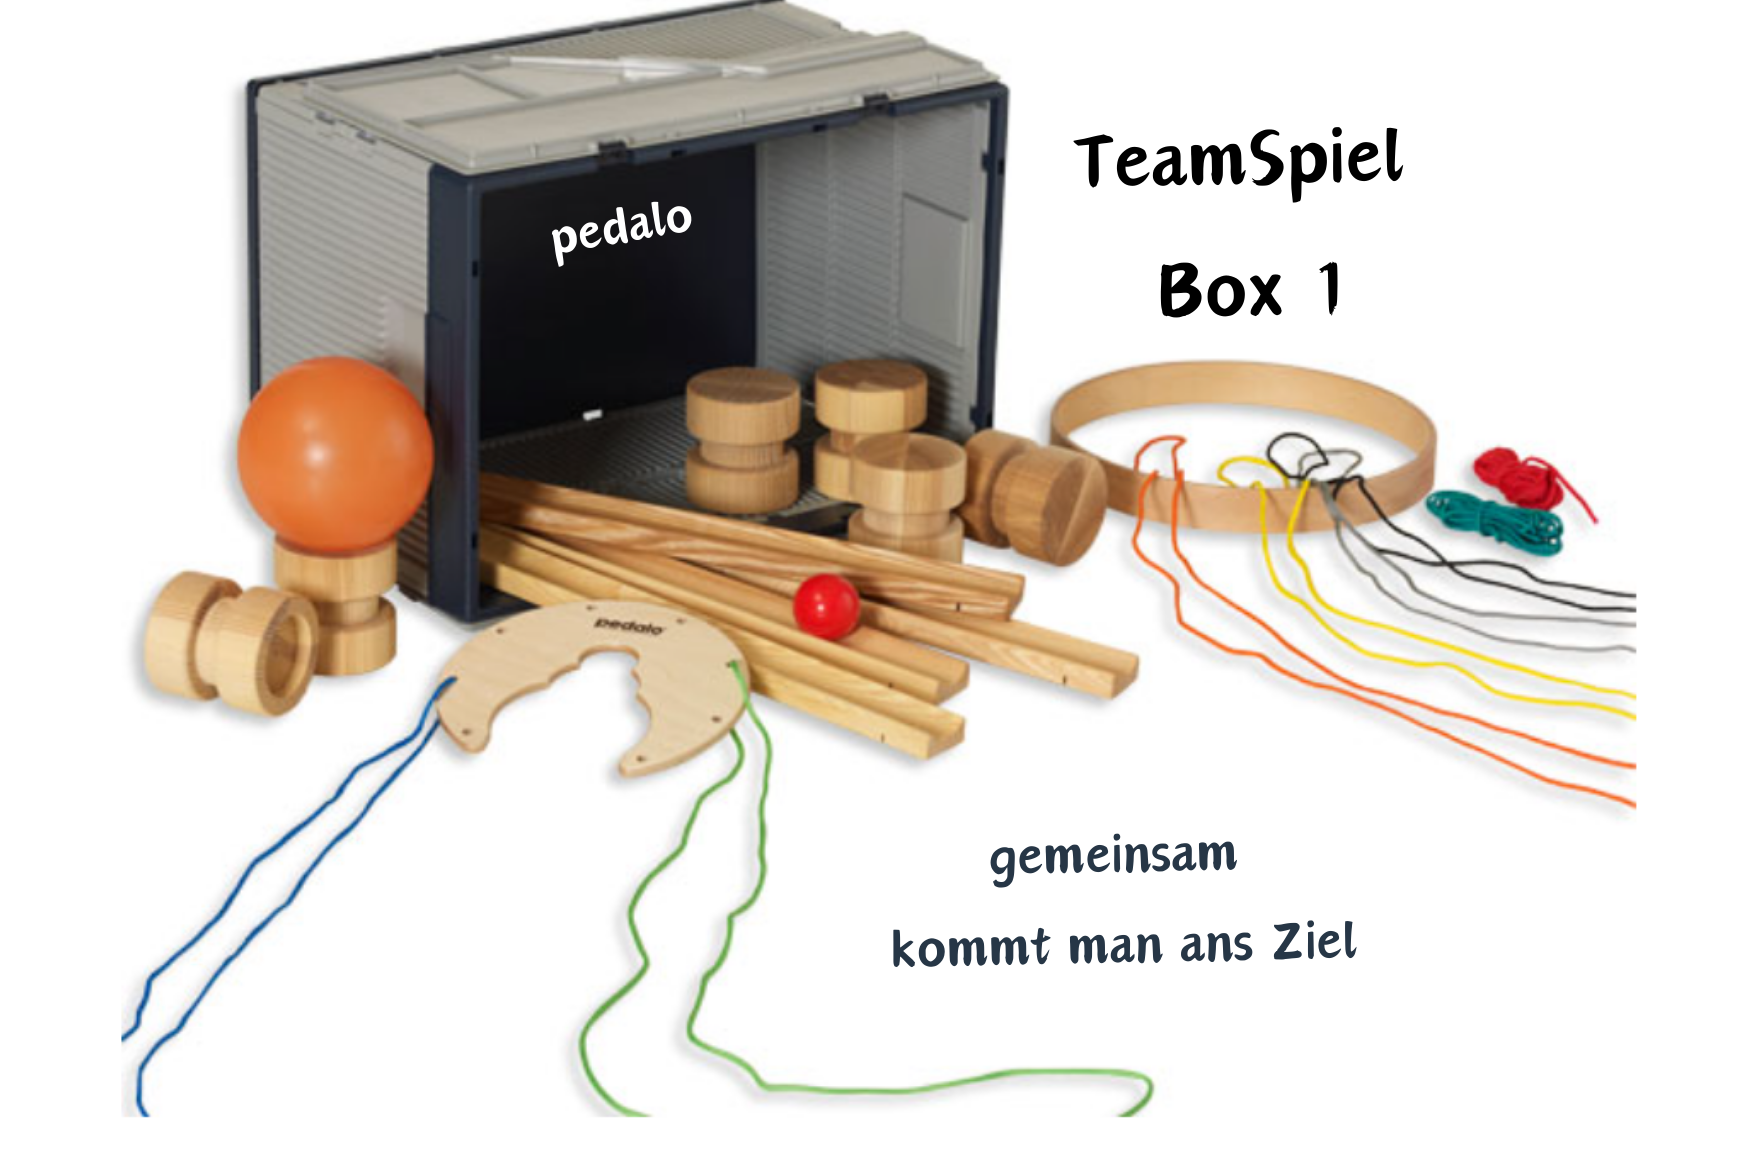 TeamSpiel Box 1